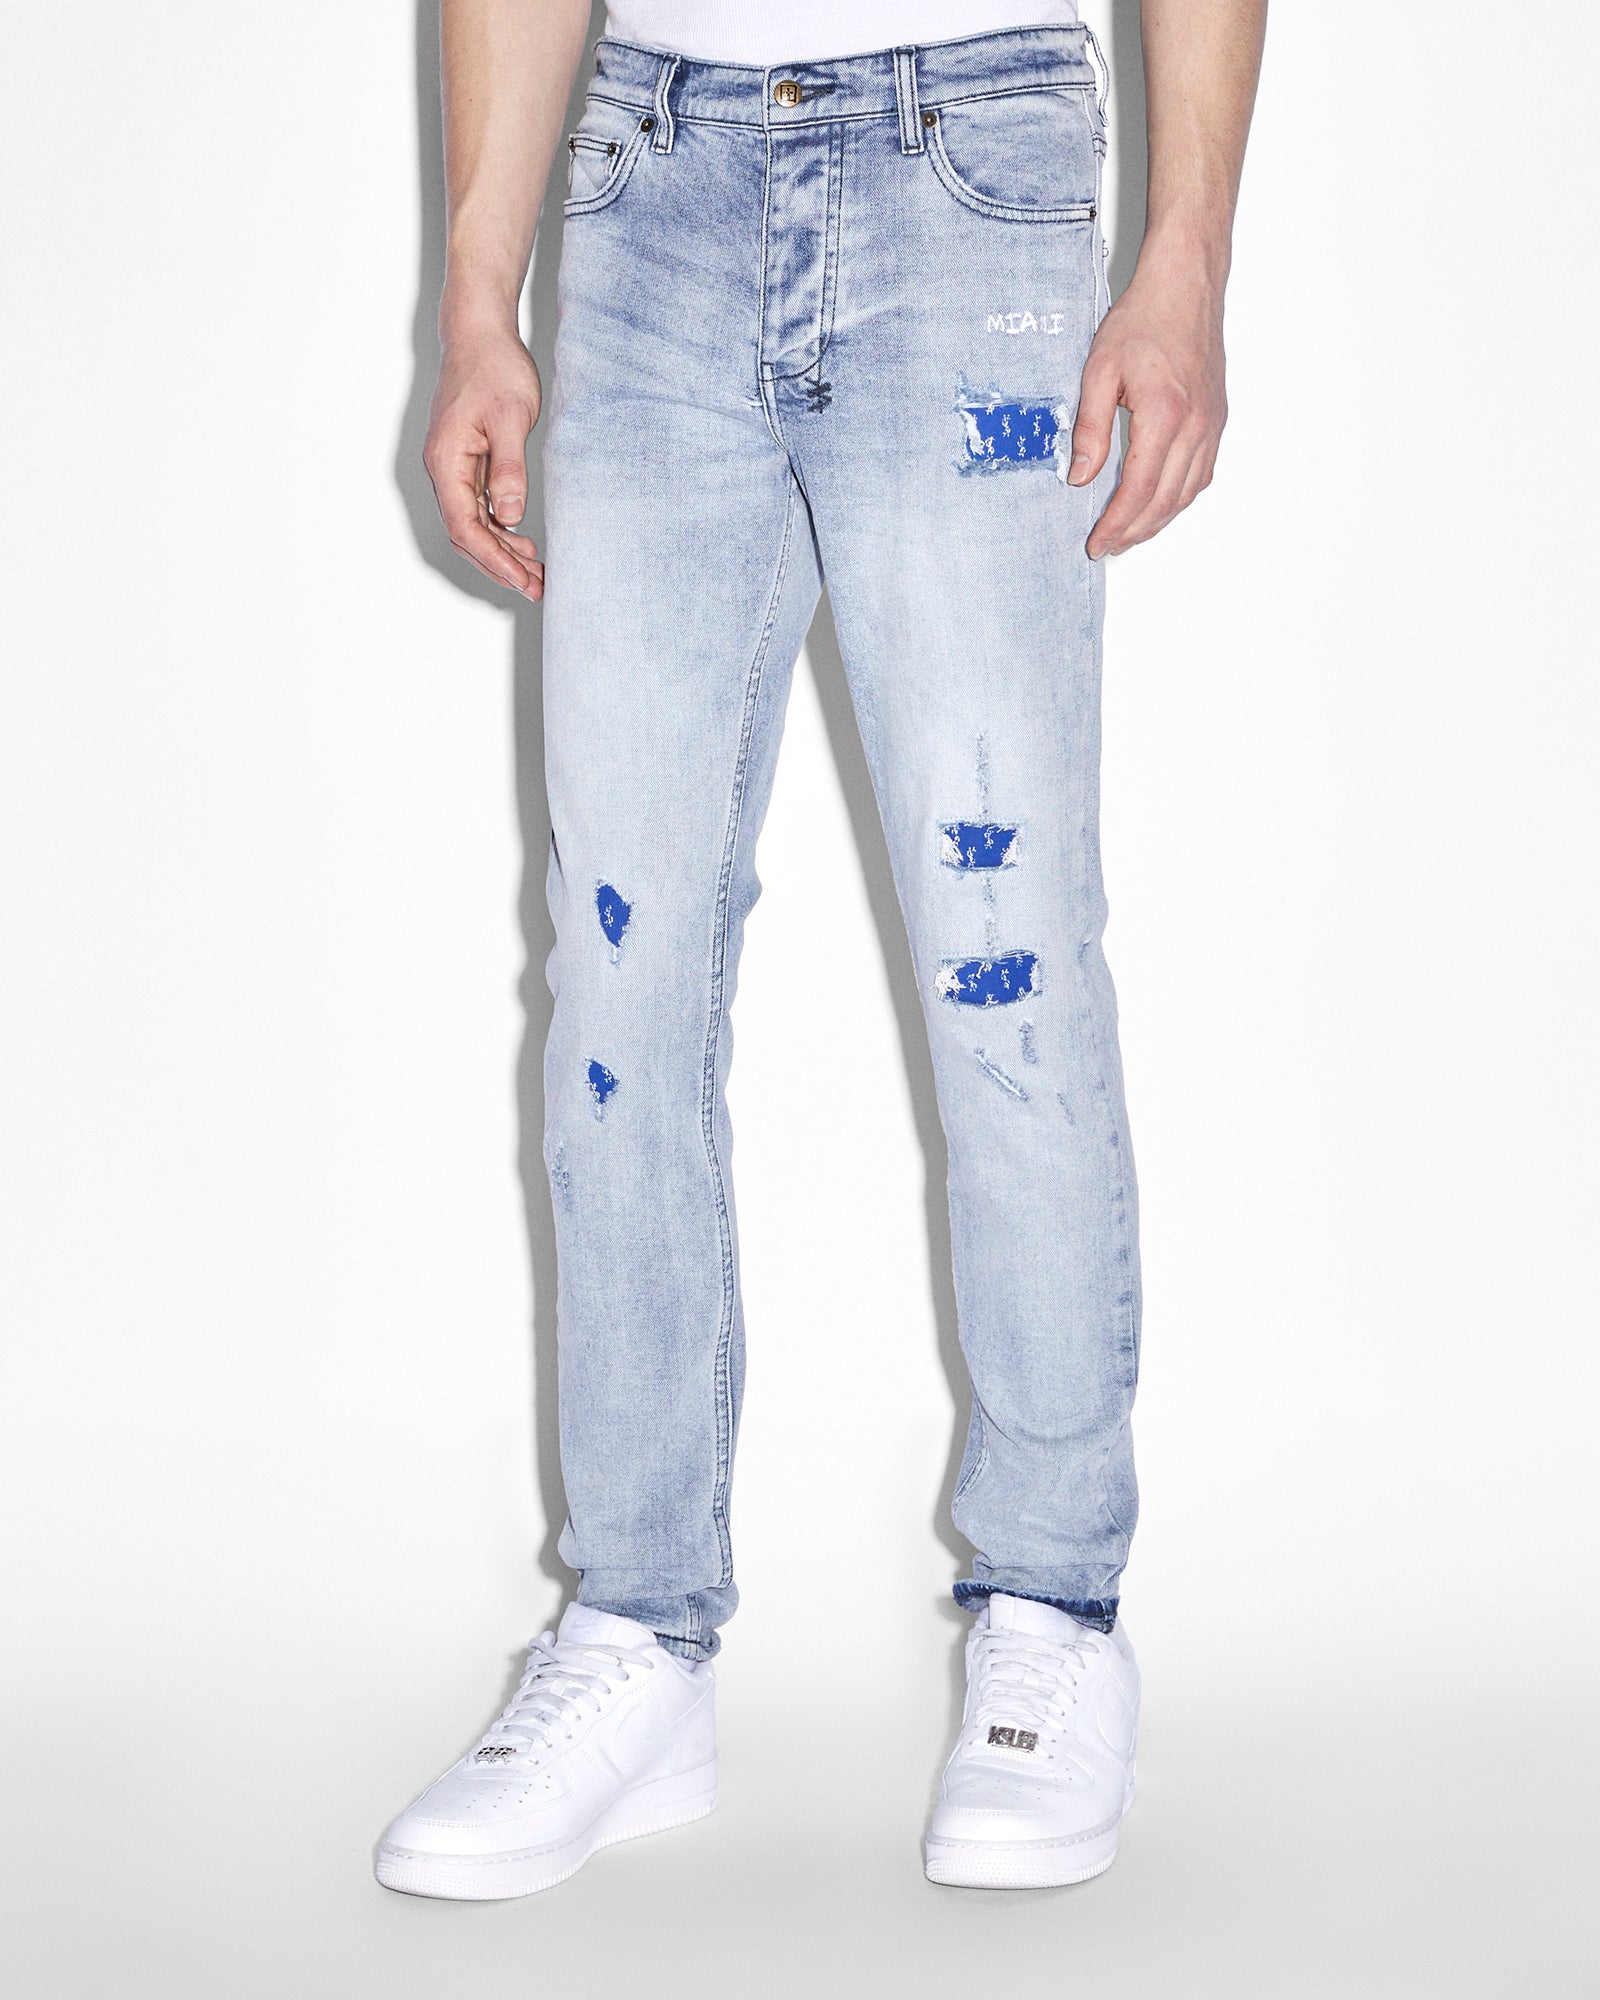 Buy Chitch Miami Philly Blue | Men's Slim Denim Jeans | Ksubi | Ksubi